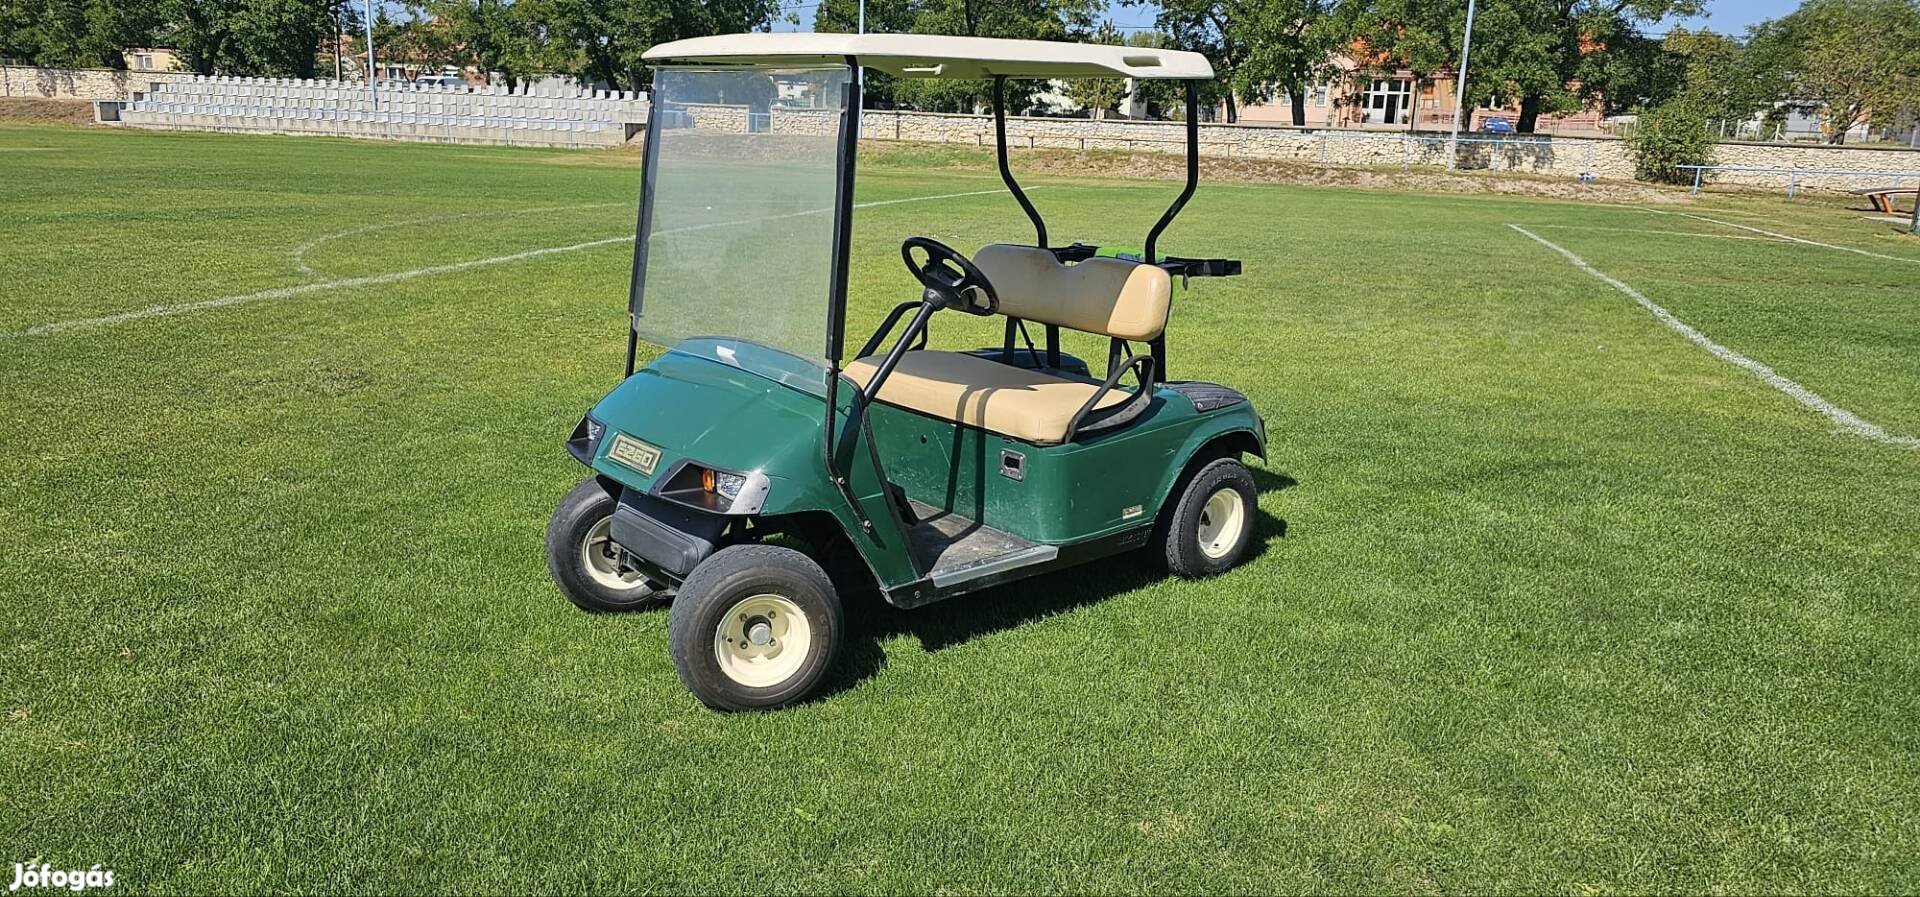 Ezgo ez go TXT Új Akksi!! elektromos golfkocsi golfautó golf club car